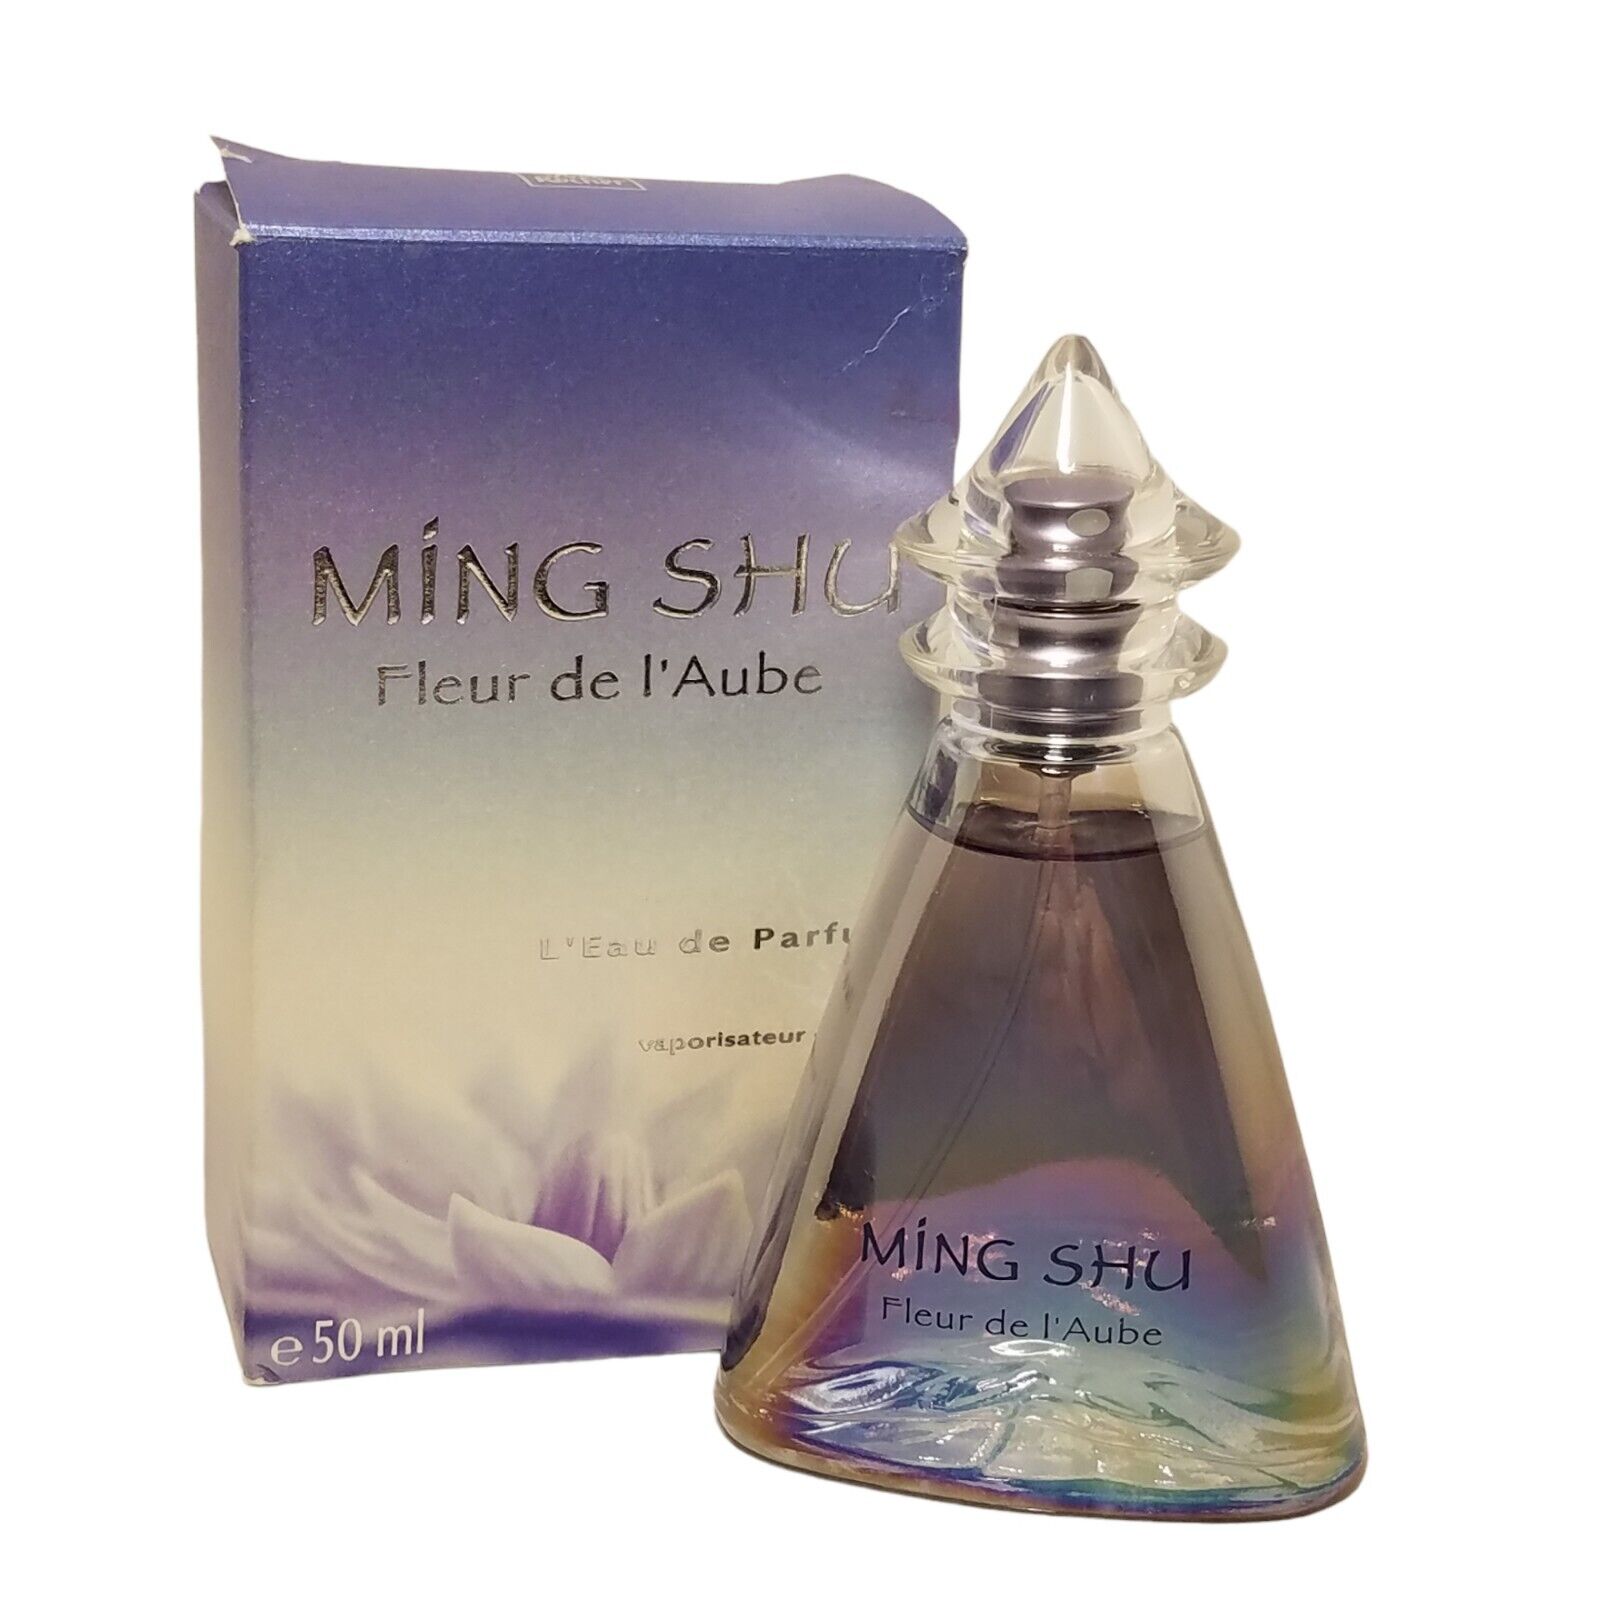 Yves Rocher Ming Shu Fleur De L'Aube Eau De Parfum Spray Bottle FULL 1.7 fl oz